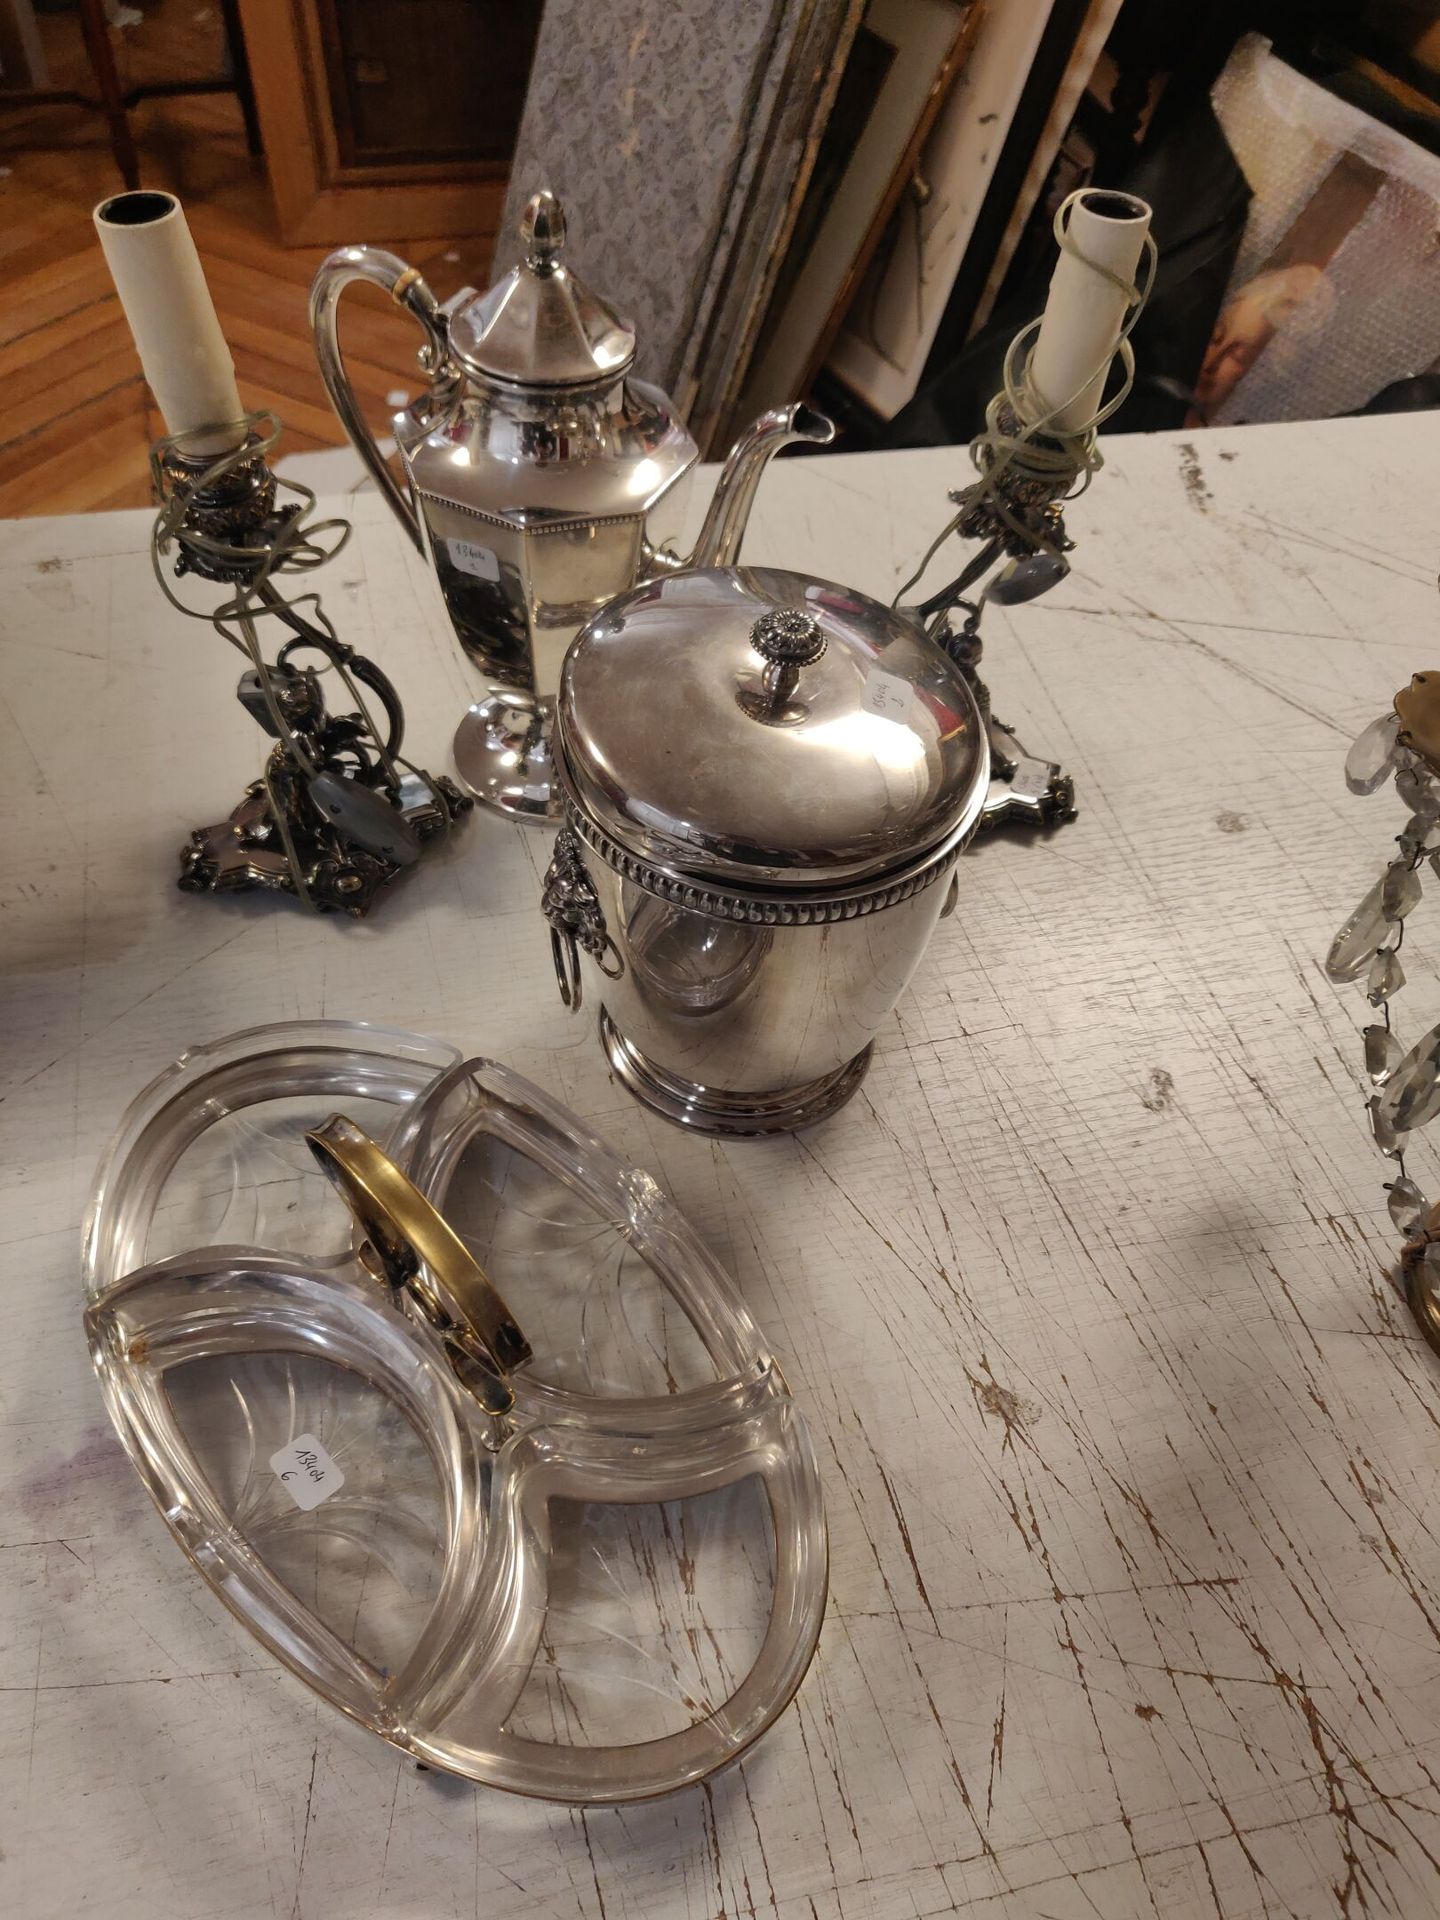 Null 拍品包括： 
镀银咖啡壶，镀银香槟桶（使用事故），两个镀银火把，上面有玫瑰花和小天使的图案，开胃菜陈列架及其四个玻璃托盘。